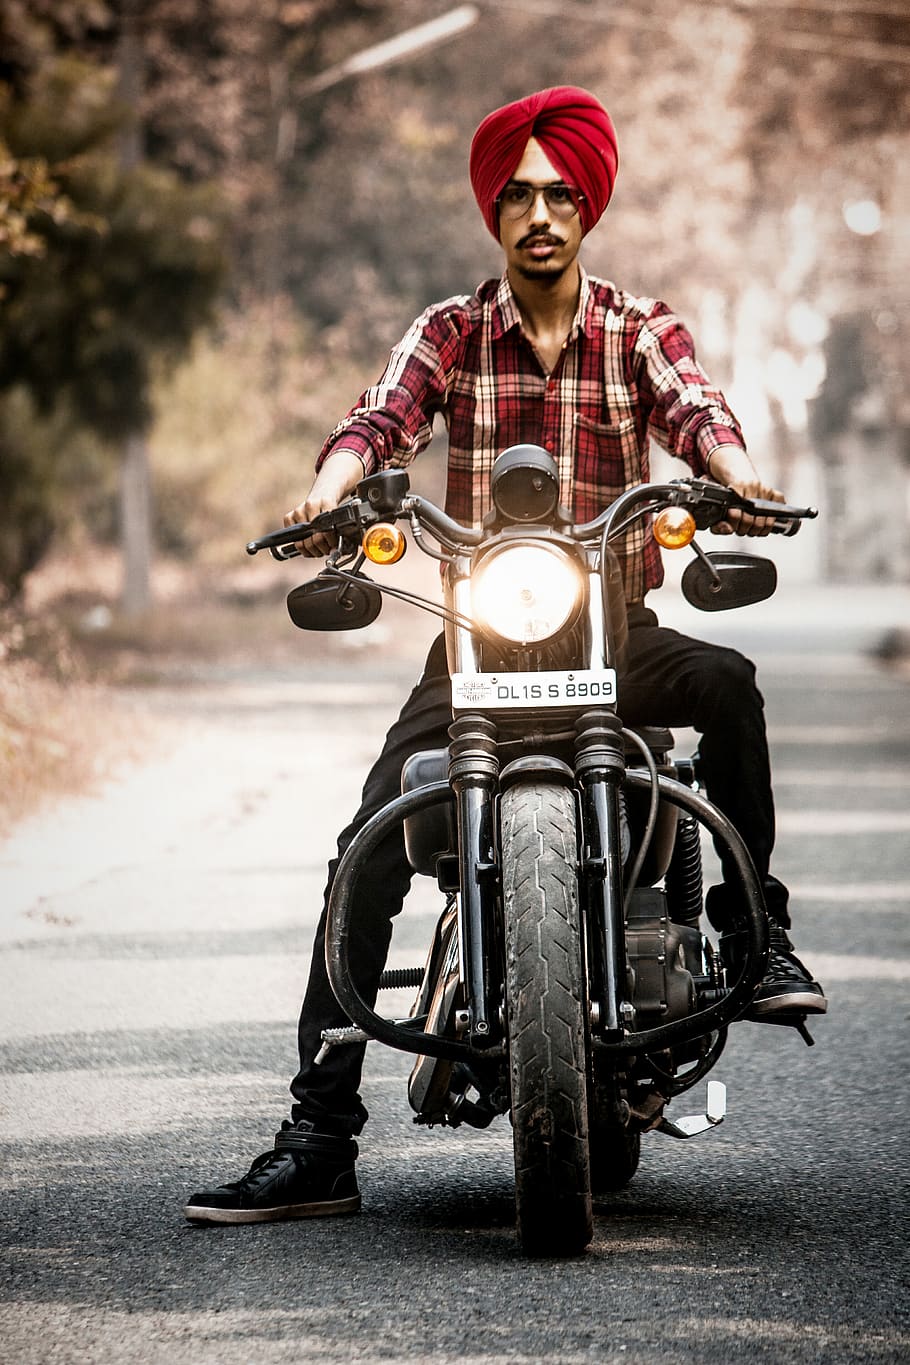 HD wallpaper: india, patiala, harley davidson, trending, bike, superbike |  Wallpaper Flare